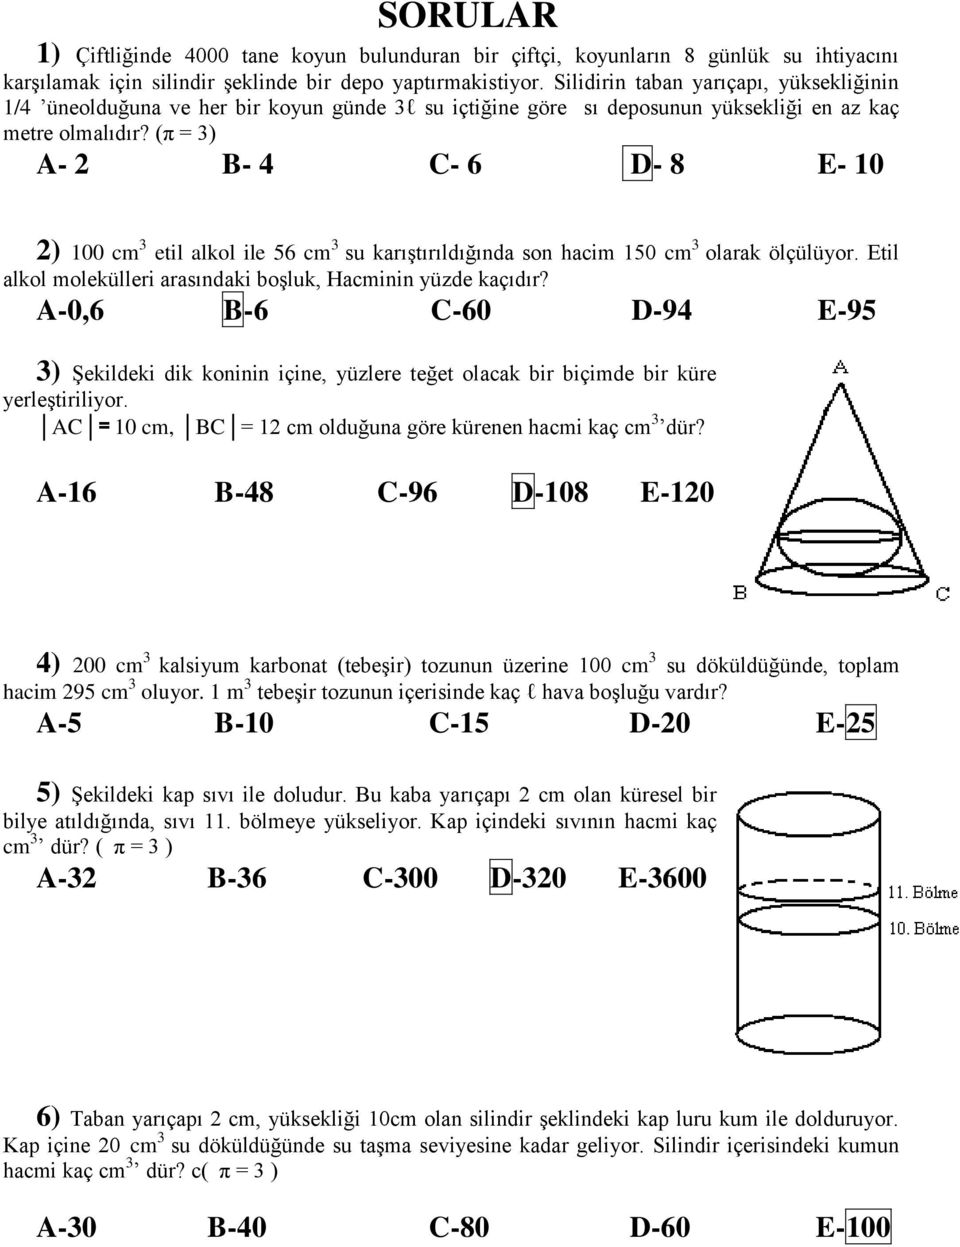 (π = ) A- 2 B- 4 C- 6 D- 8 E- 10 2) 100 cm etil alkol ile 56 cm su karıştırıldığında son hacim 150 cm olarak ölçülüyor. Etil alkol molekülleri arasındaki boşluk, Hacminin yüzde kaçıdır?